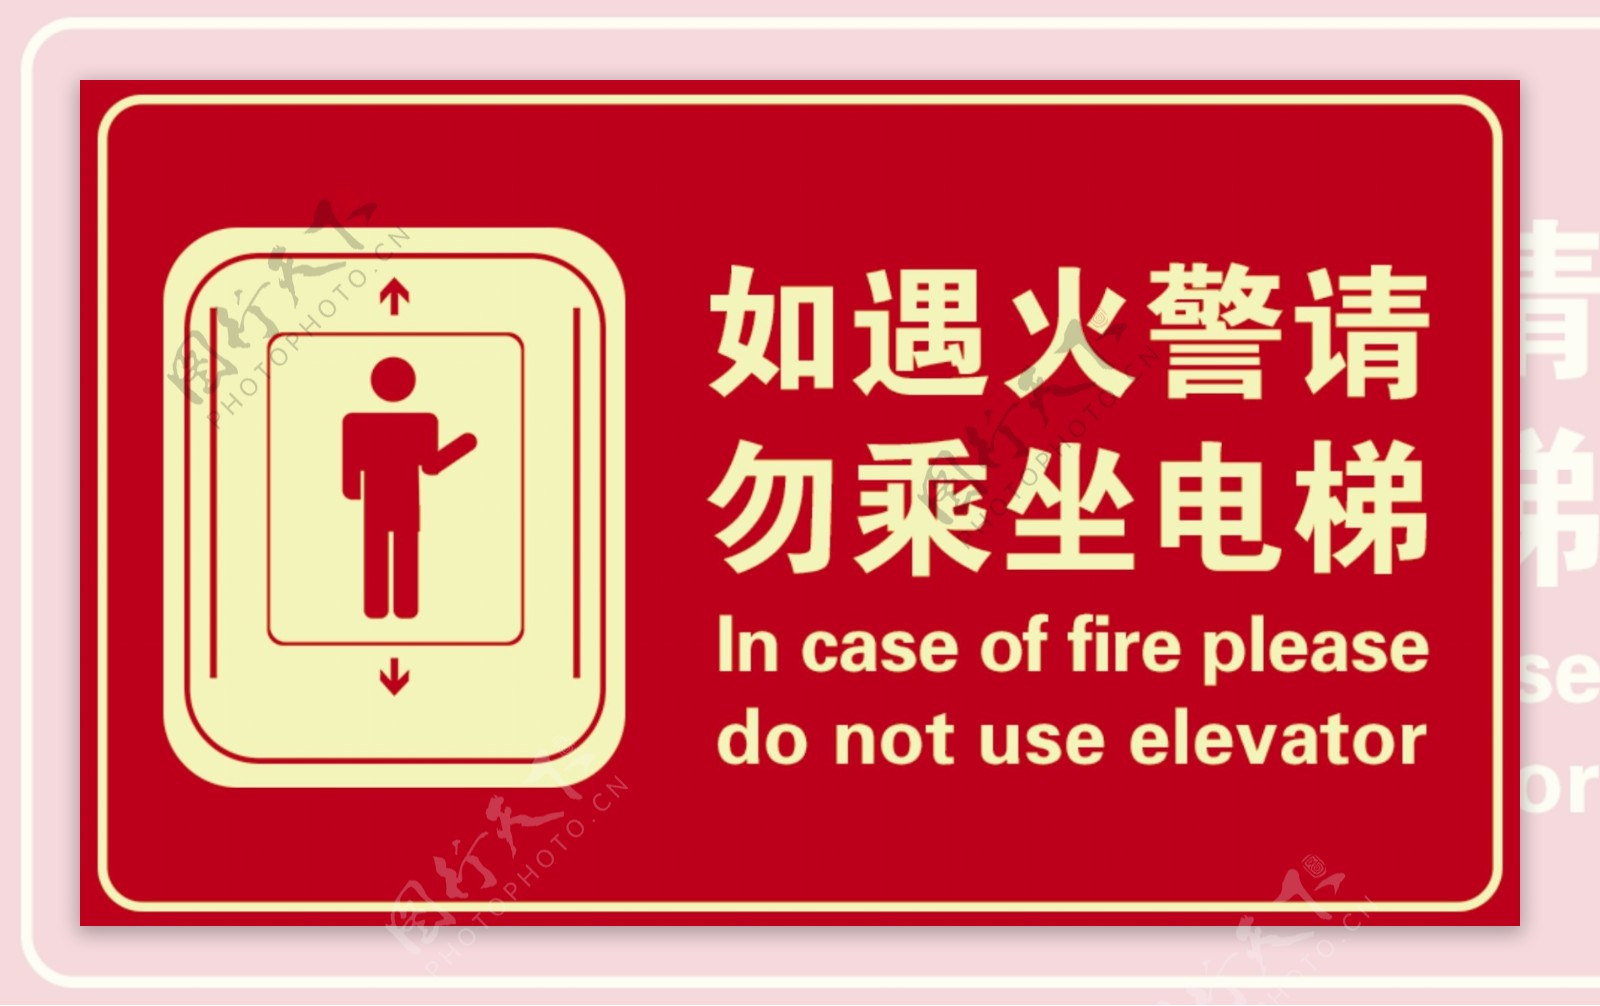 如遇火警勿乘坐电梯